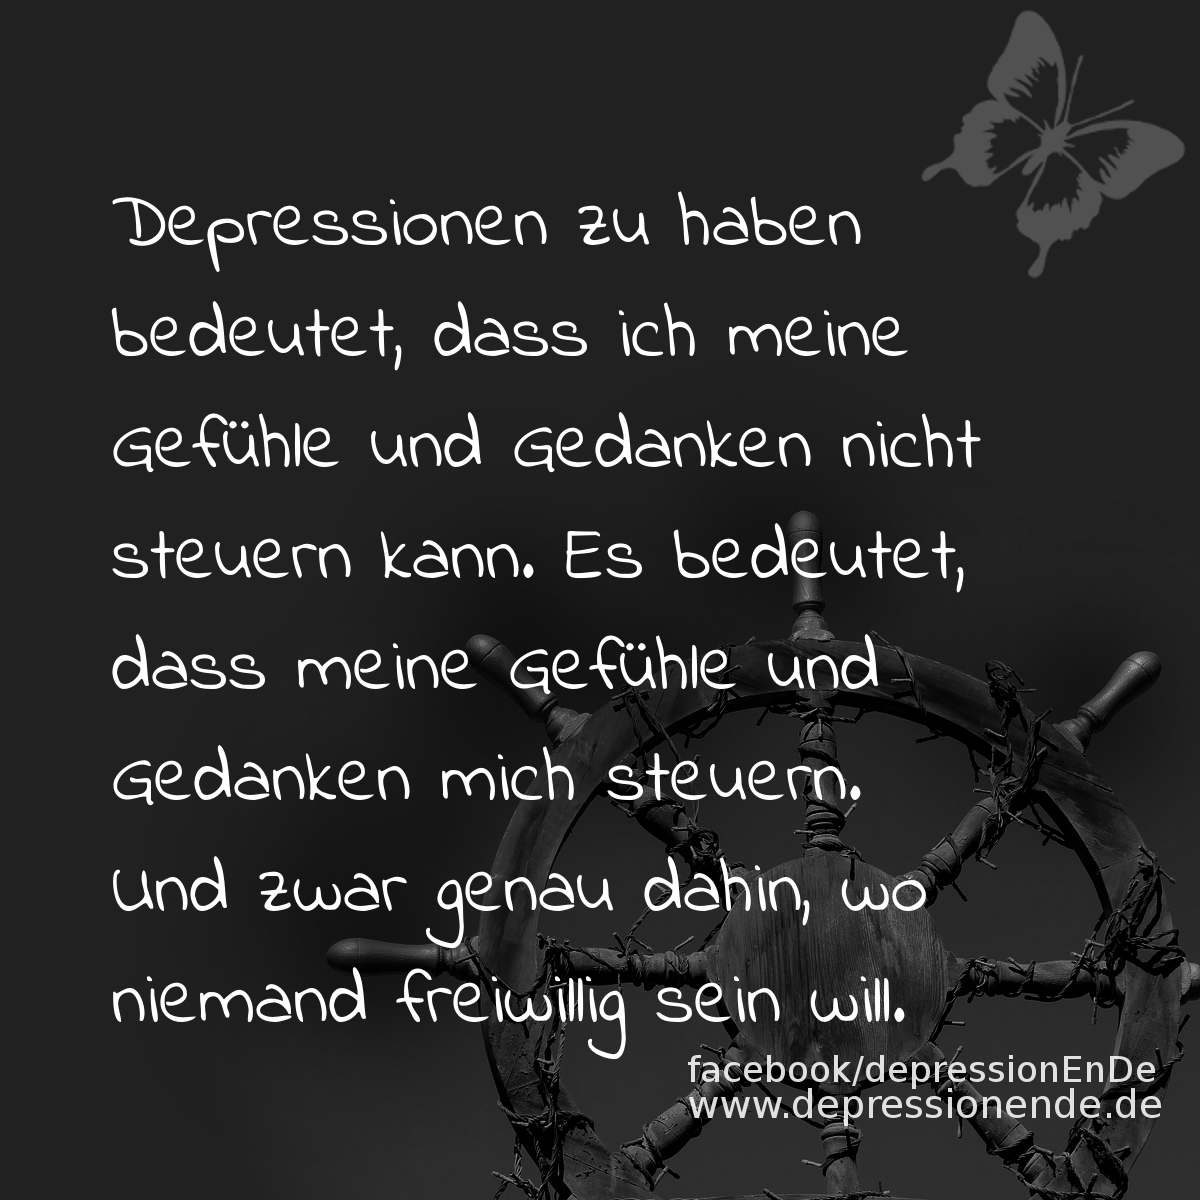 Spruchbild: Depressionen zu haben bedeutet, dass ich meine Gefühle und Gedanken nicht steuern kann. Es bedeutet, dass meine Gefühle und Gedanken mich steuern. Und zwar genau dahin, wo niemand freiwillig sein will.